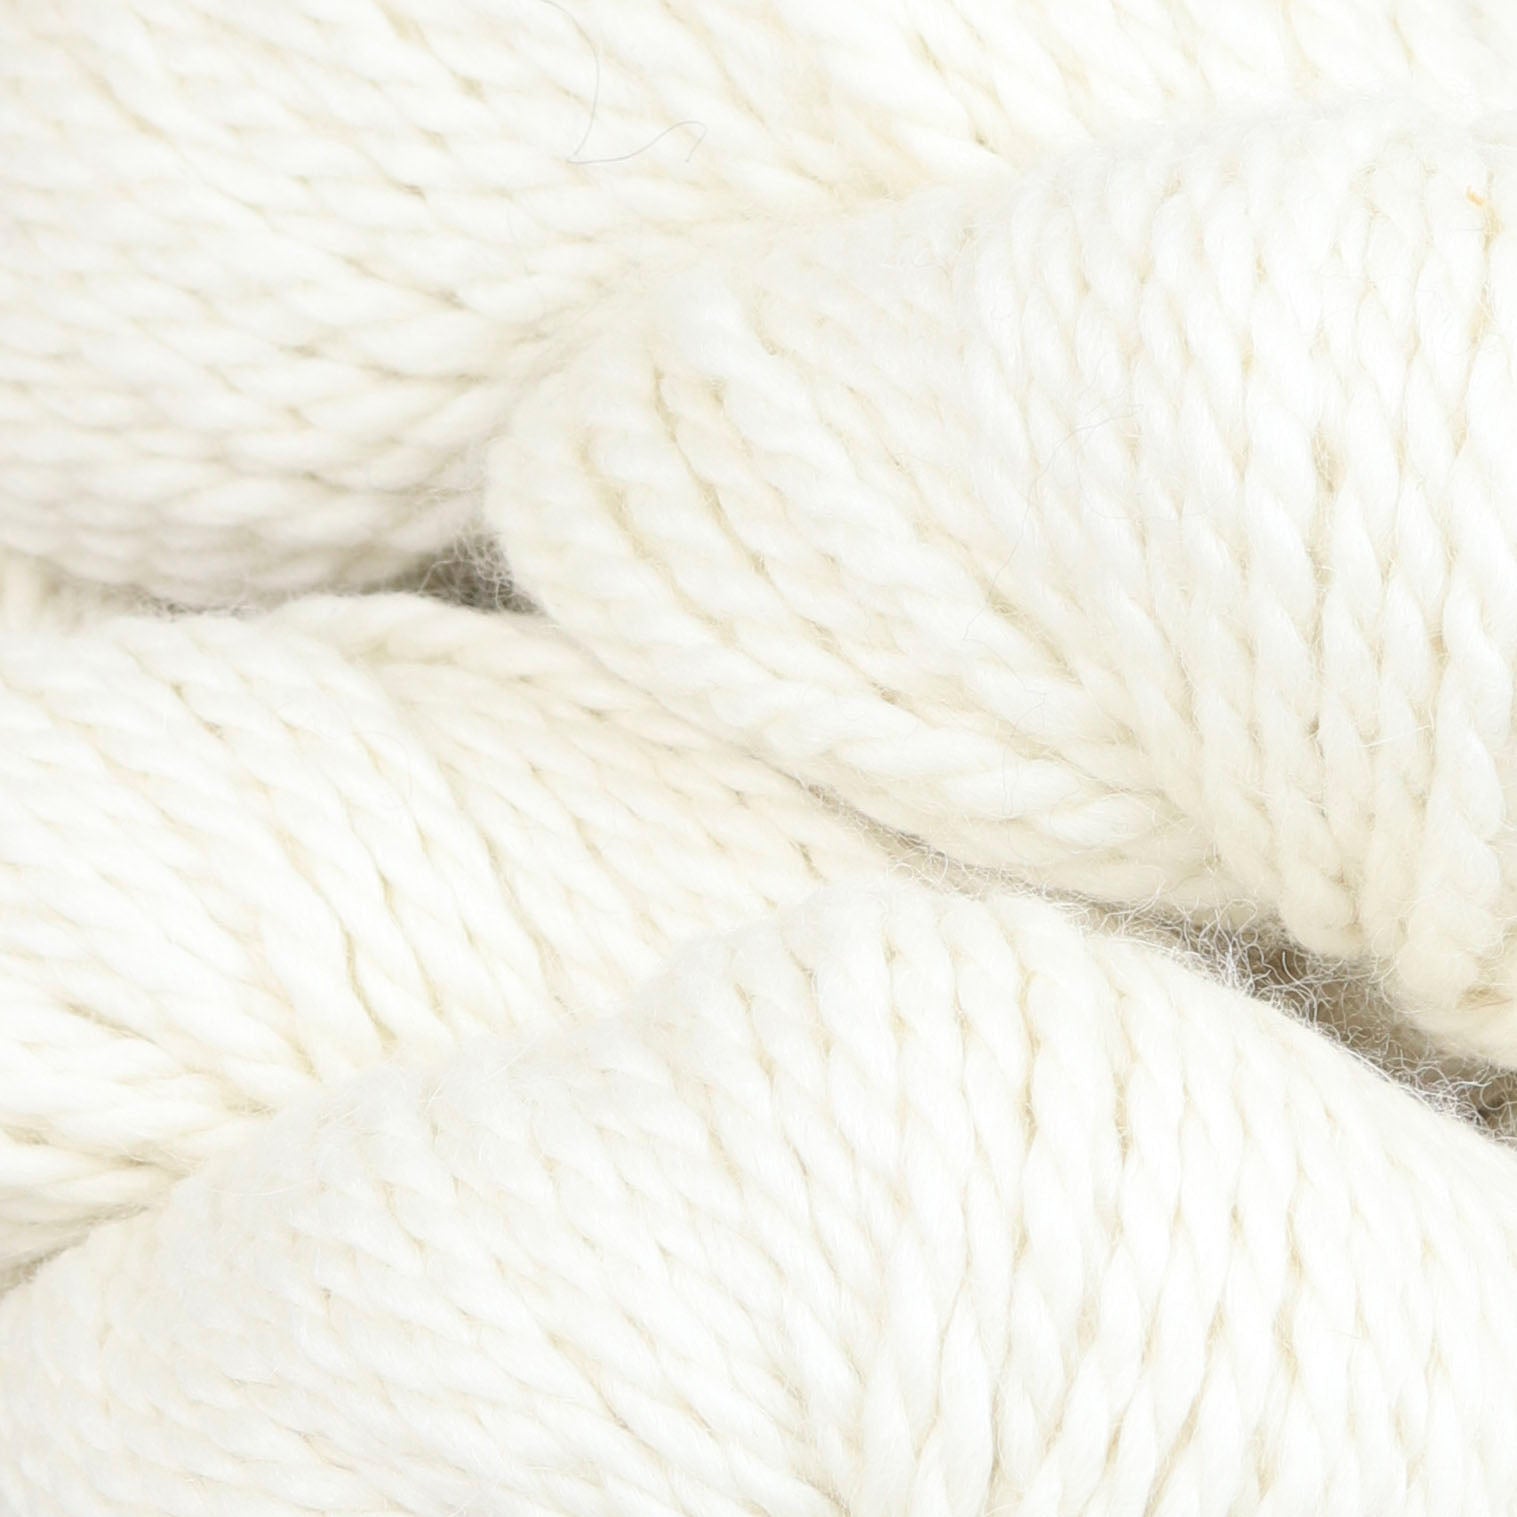 Image of the Fibre Co. Tundra in Snowdrift a bright white color.